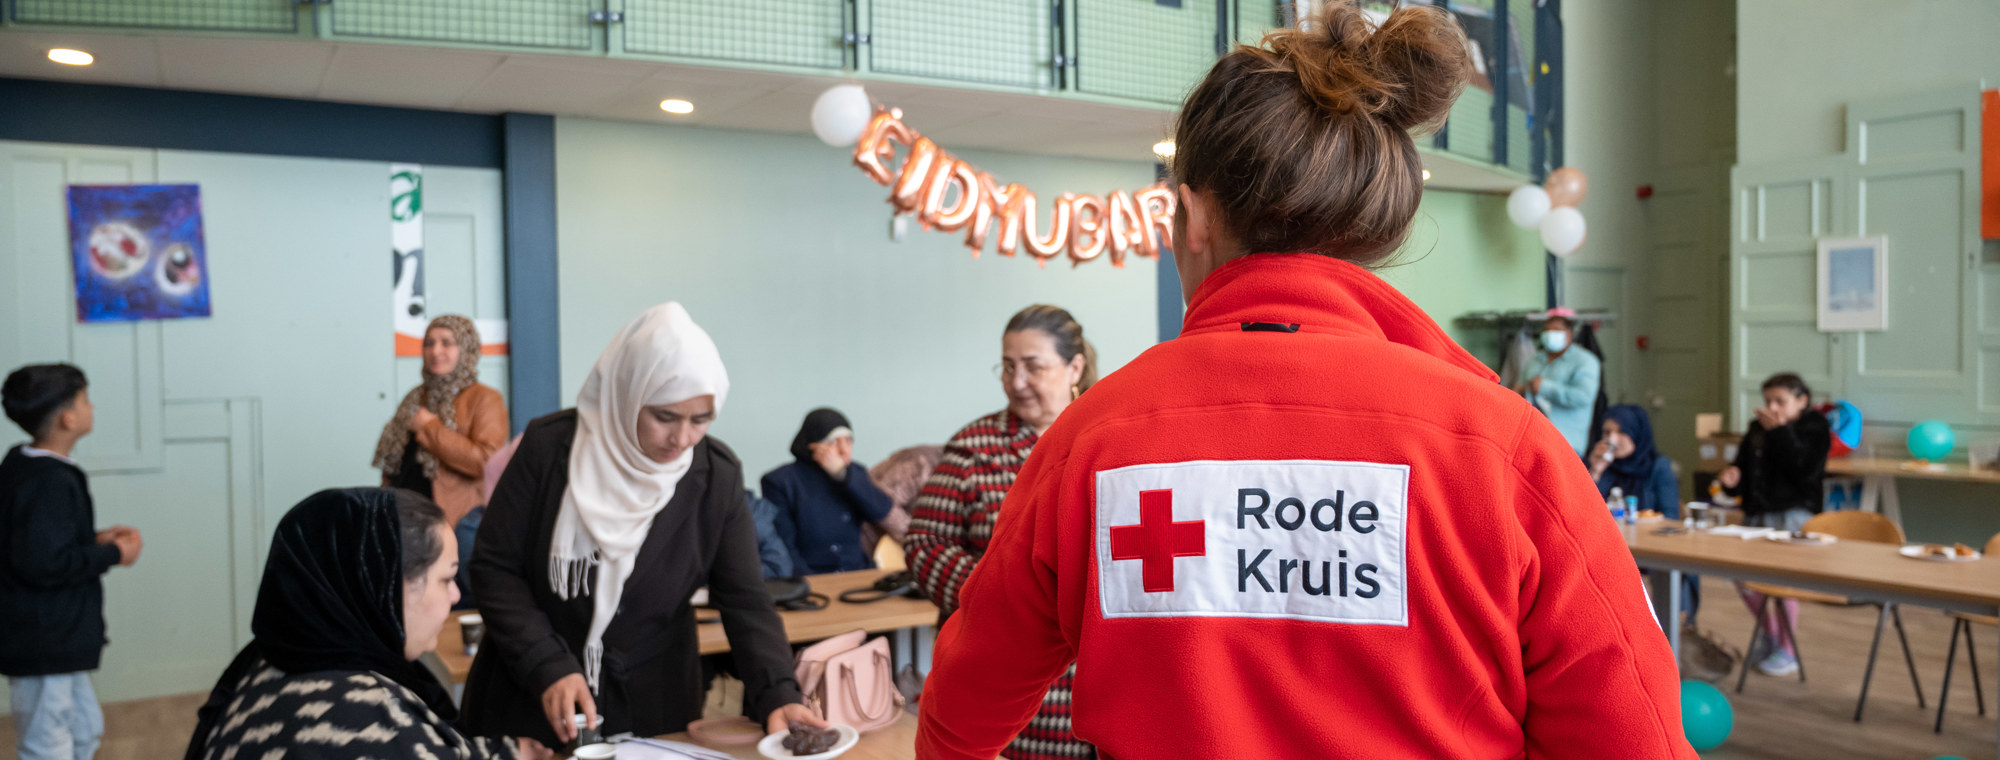 Wat is er mis Elektrisch in het geheim Rode Kruis District Rotterdam-Rijnmond - De Nieuwe Gevers